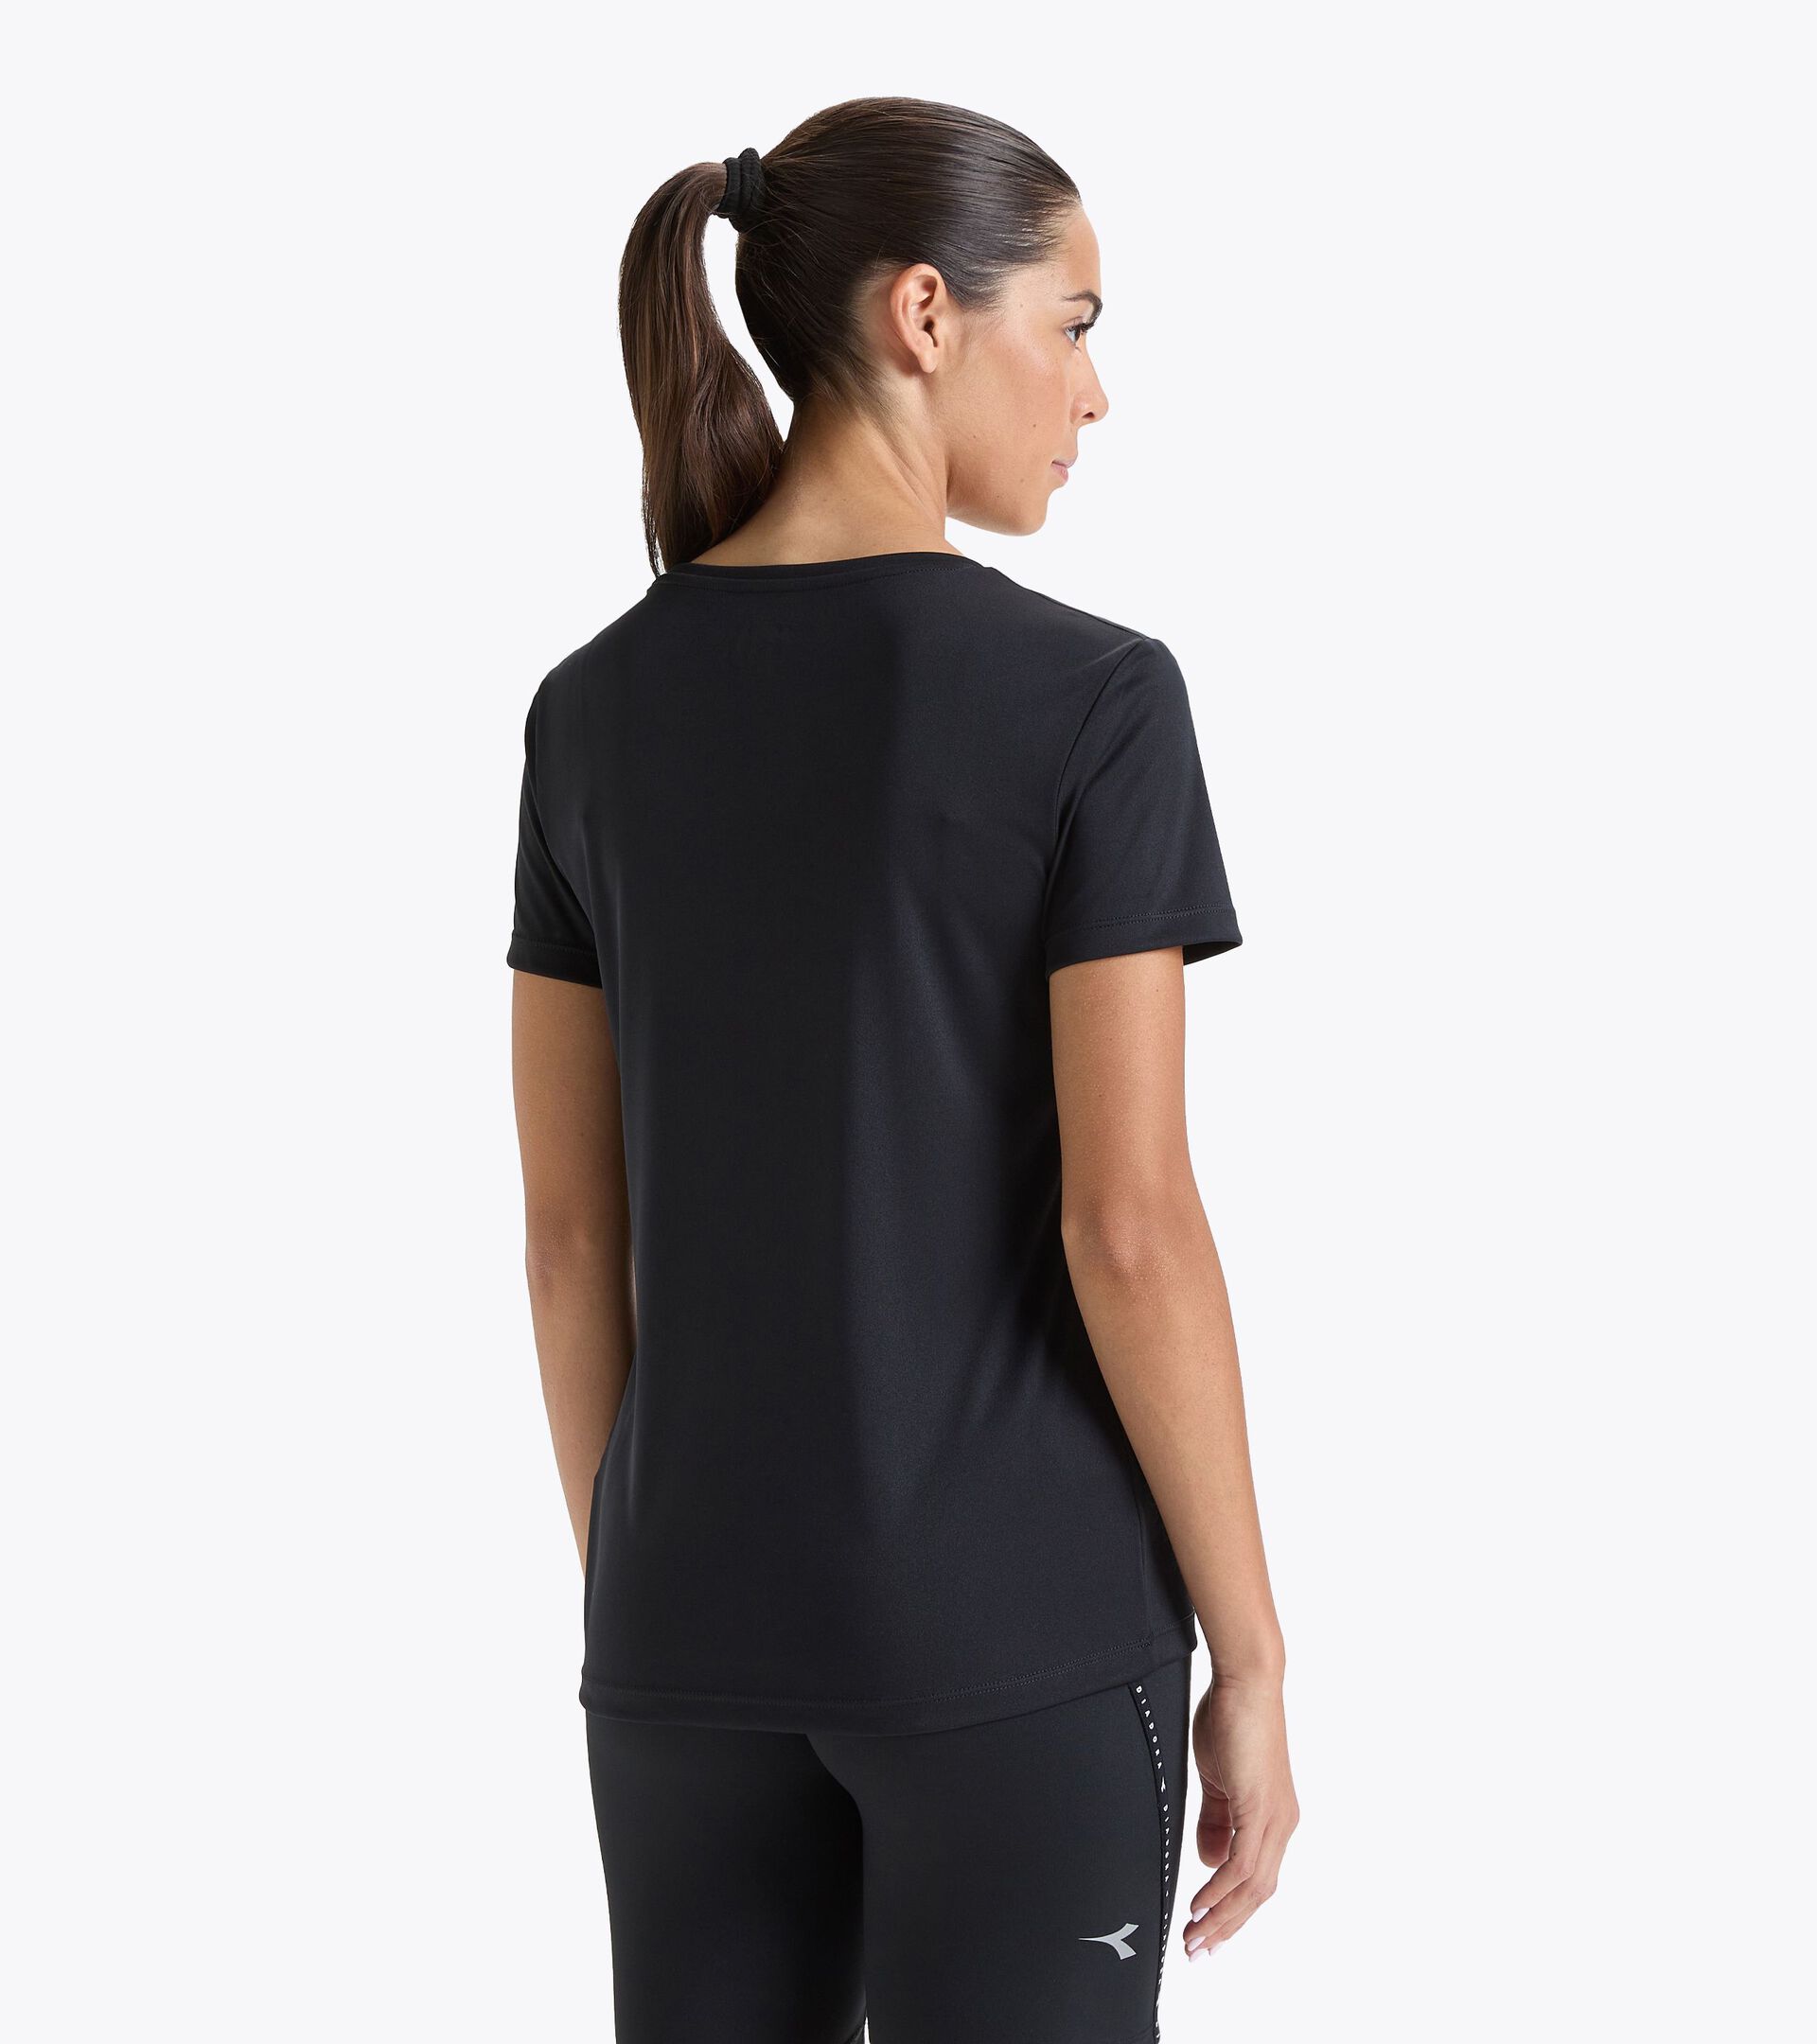 T-shirt de running - Femme L. SS T-SHIRT RUN NOIR - Diadora